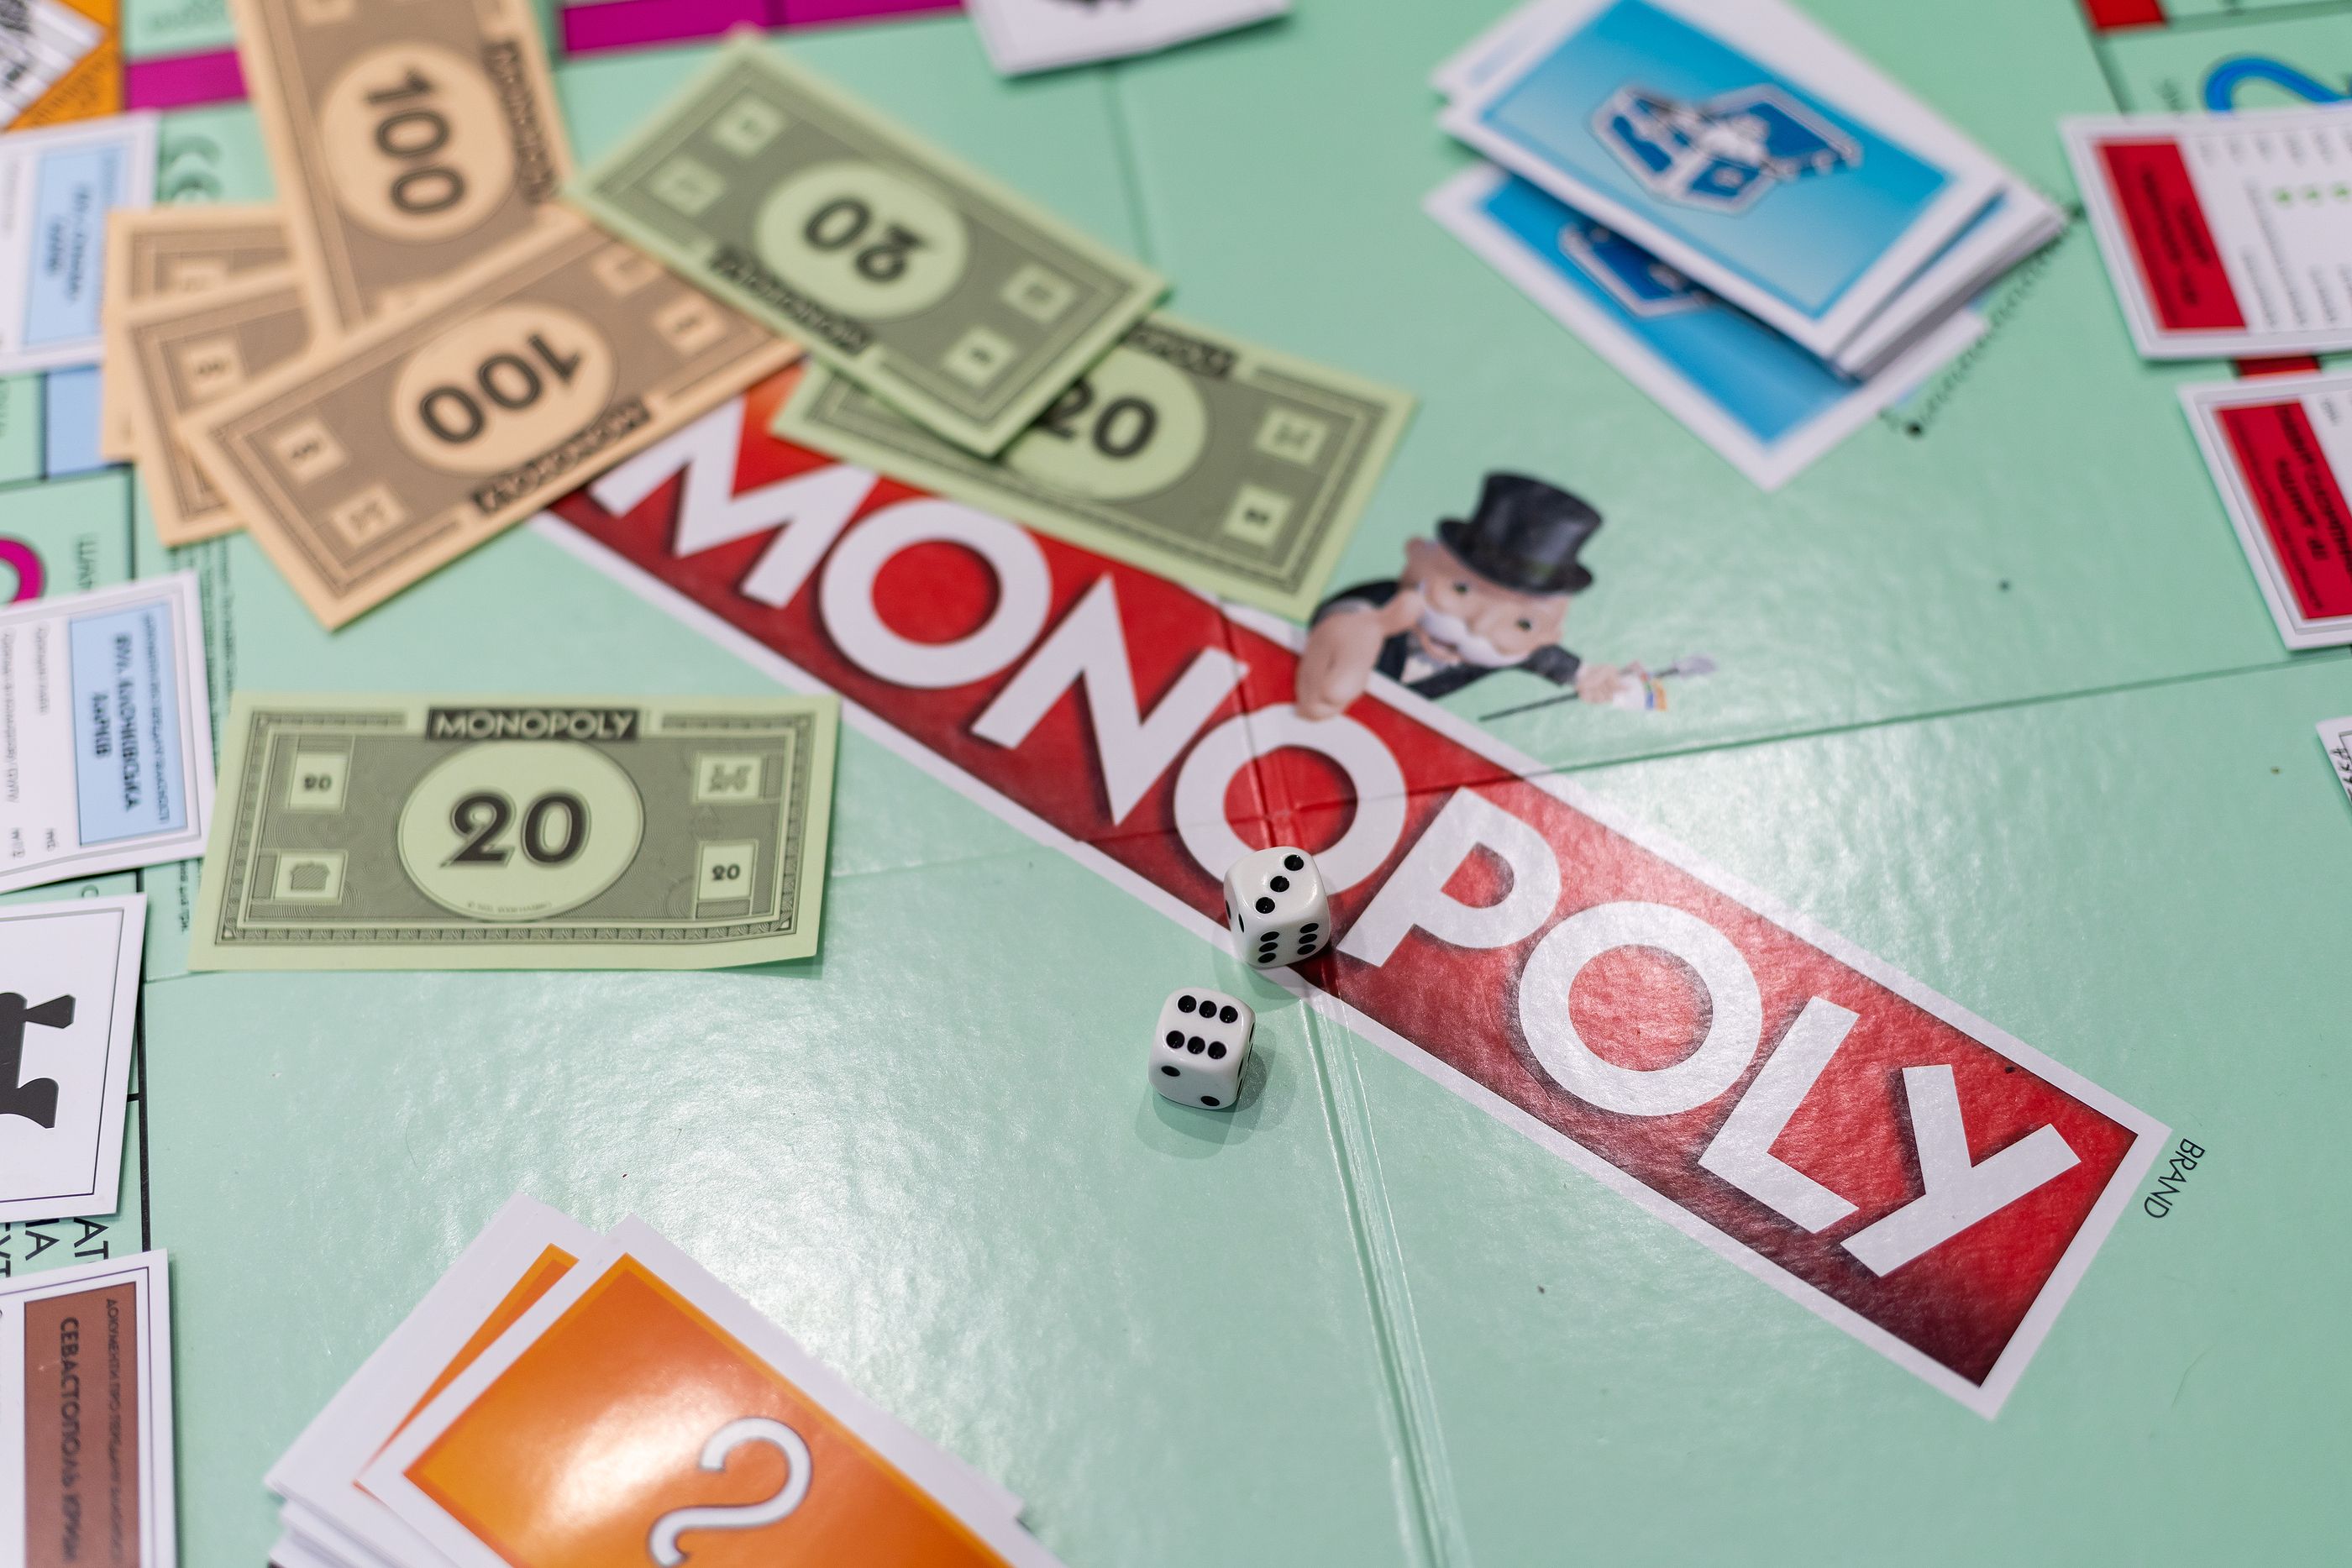 La curiosa historia del Monopoly: de criticar el capitalismo a defenderlo